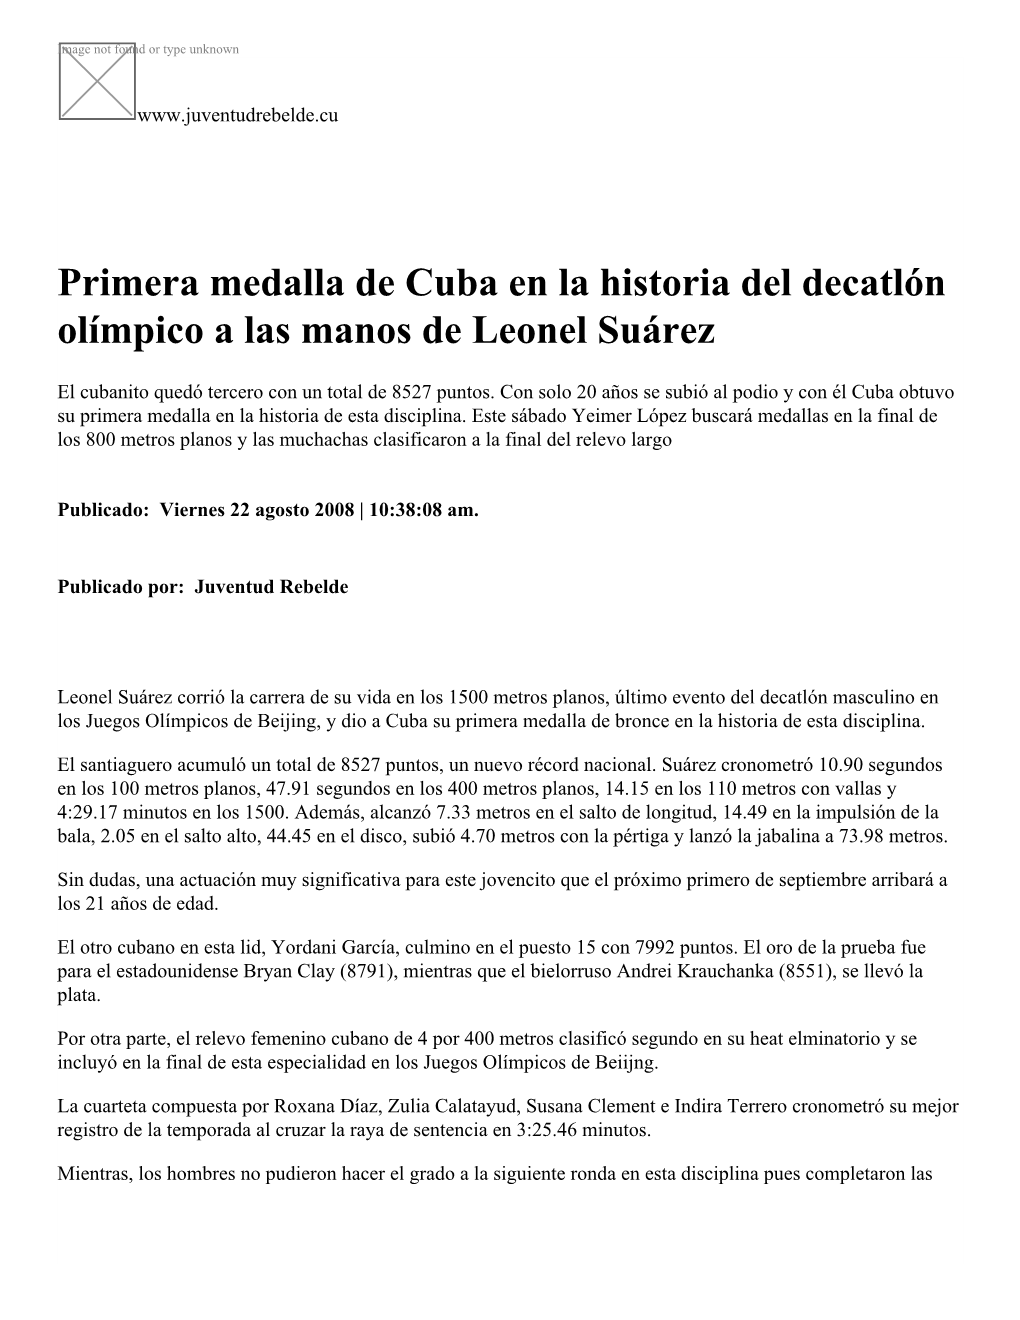 Primera Medalla De Cuba En La Historia Del Decatlón Olímpico a Las Manos De Leonel Suárez